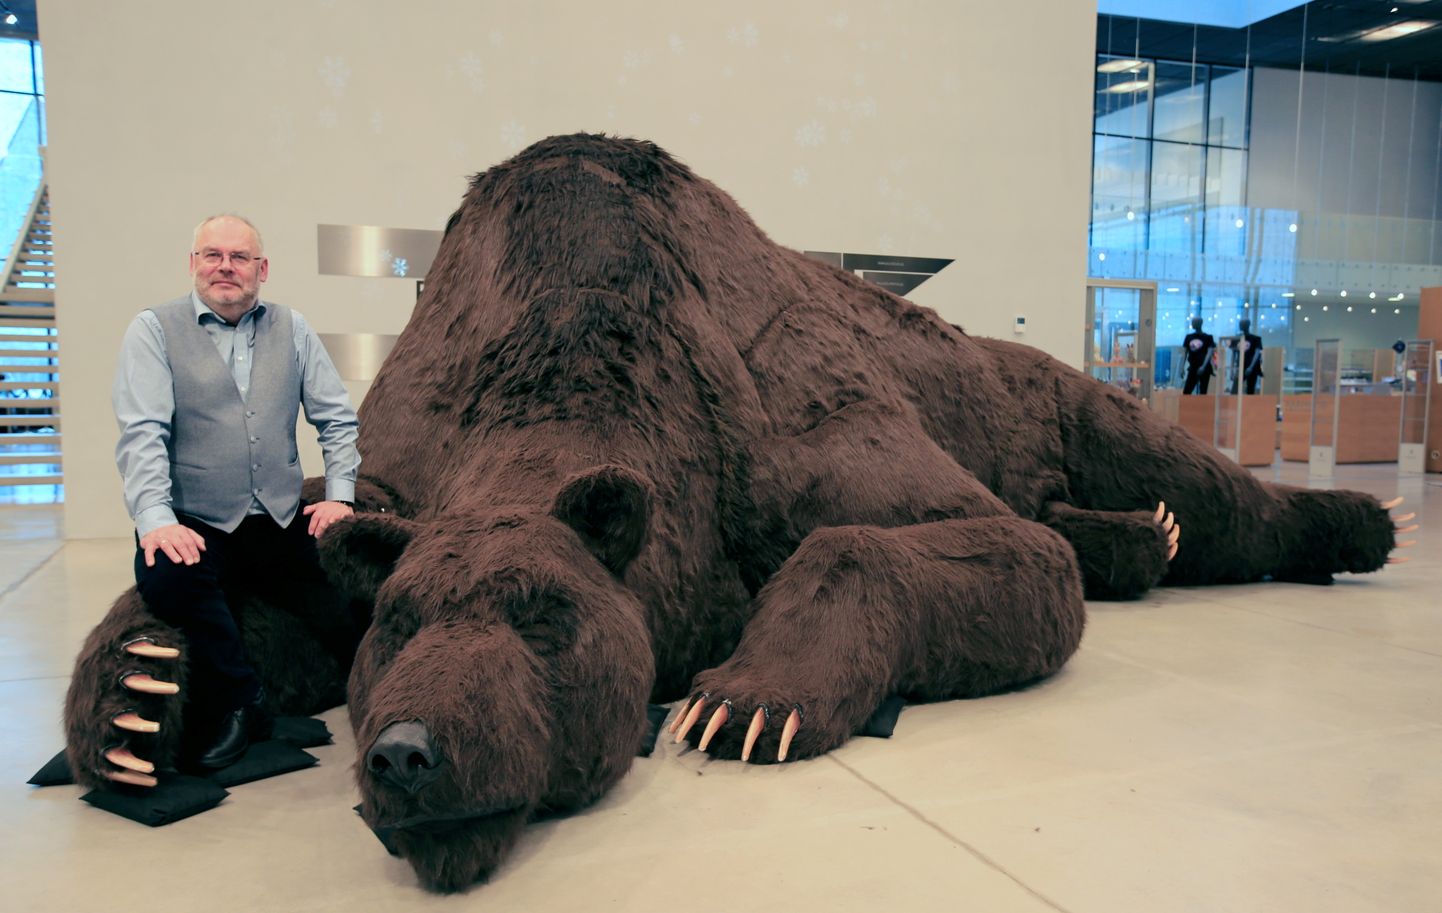 Директор Национального музея Алар Карис рядом с медведем, привезенного из России в качестве экспоната сказочной выставки.